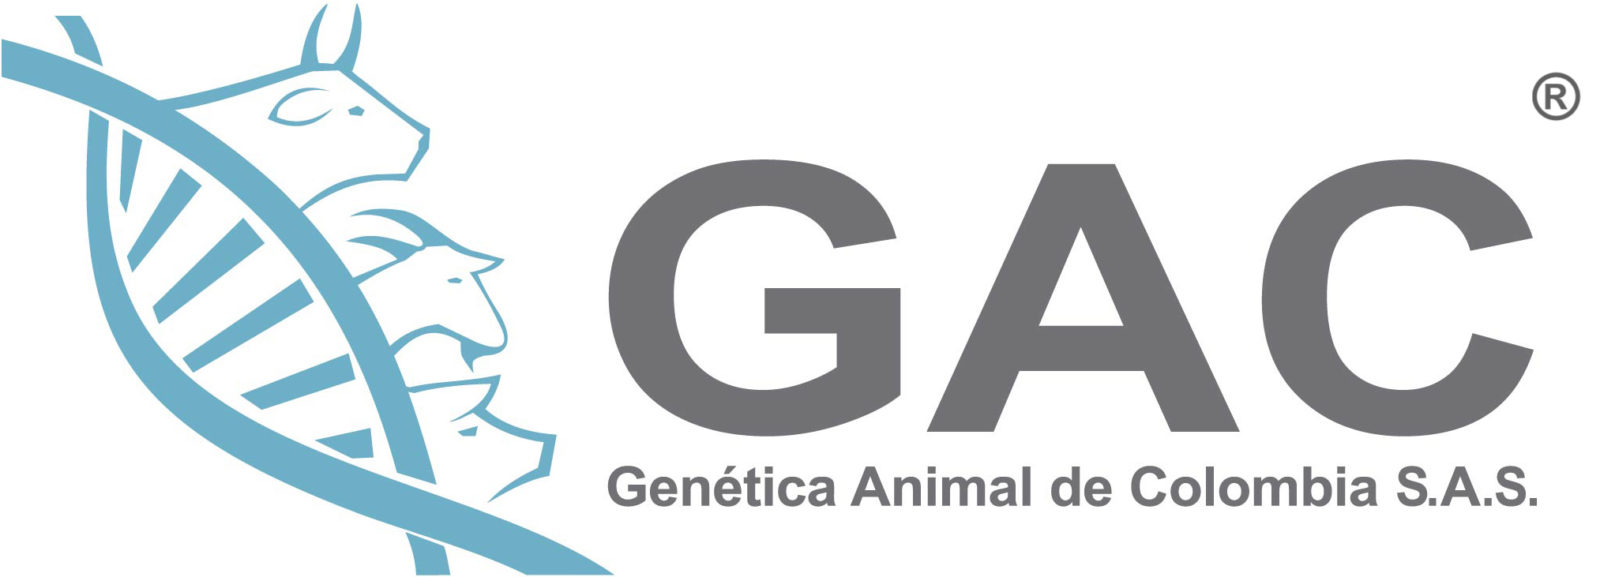 Genética Animal de Colombia